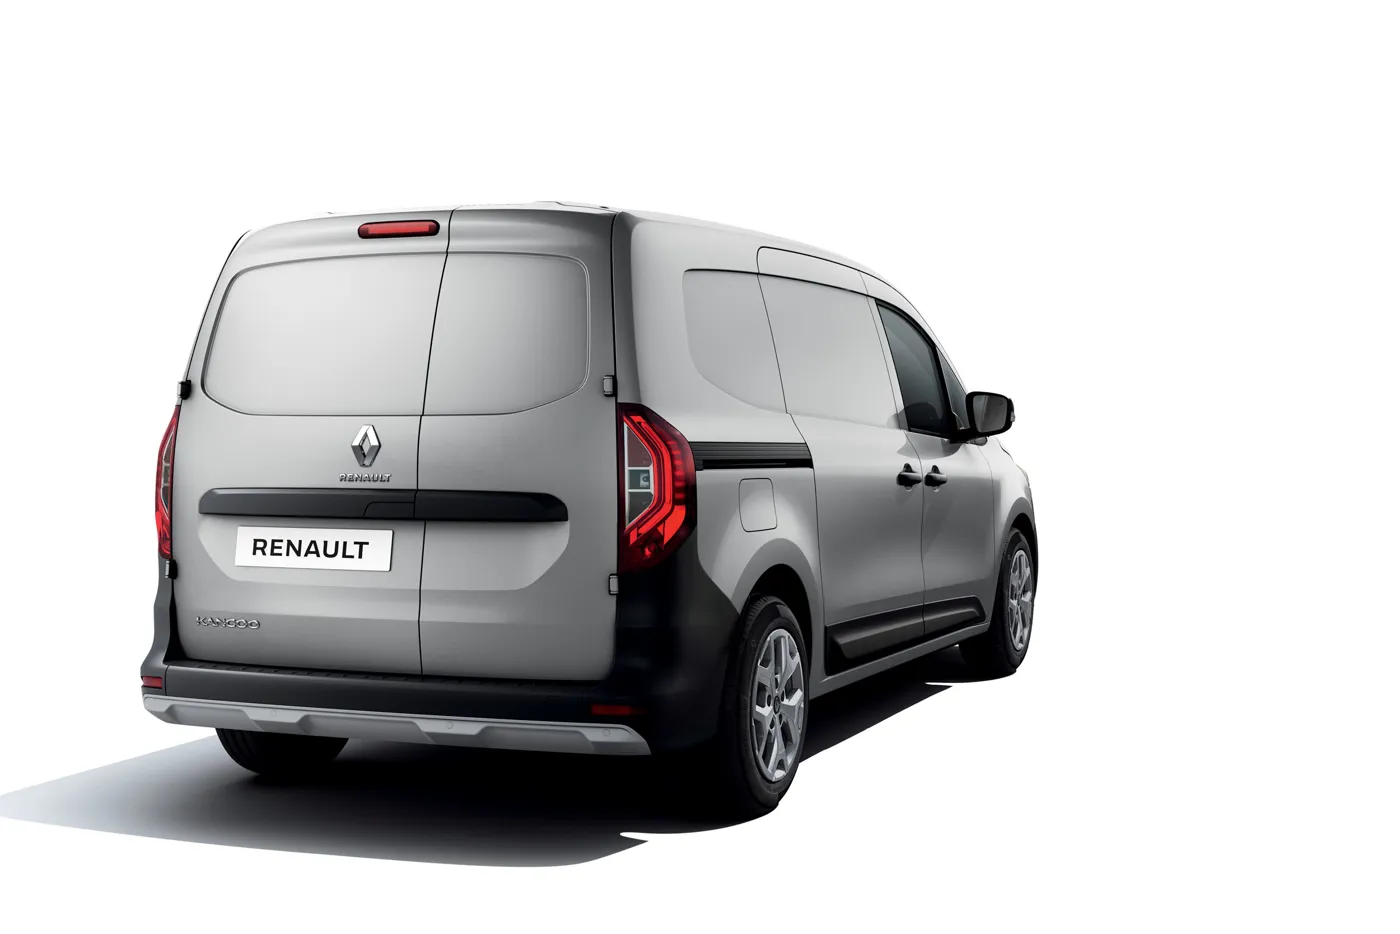 Renault unveils new Kangoo van